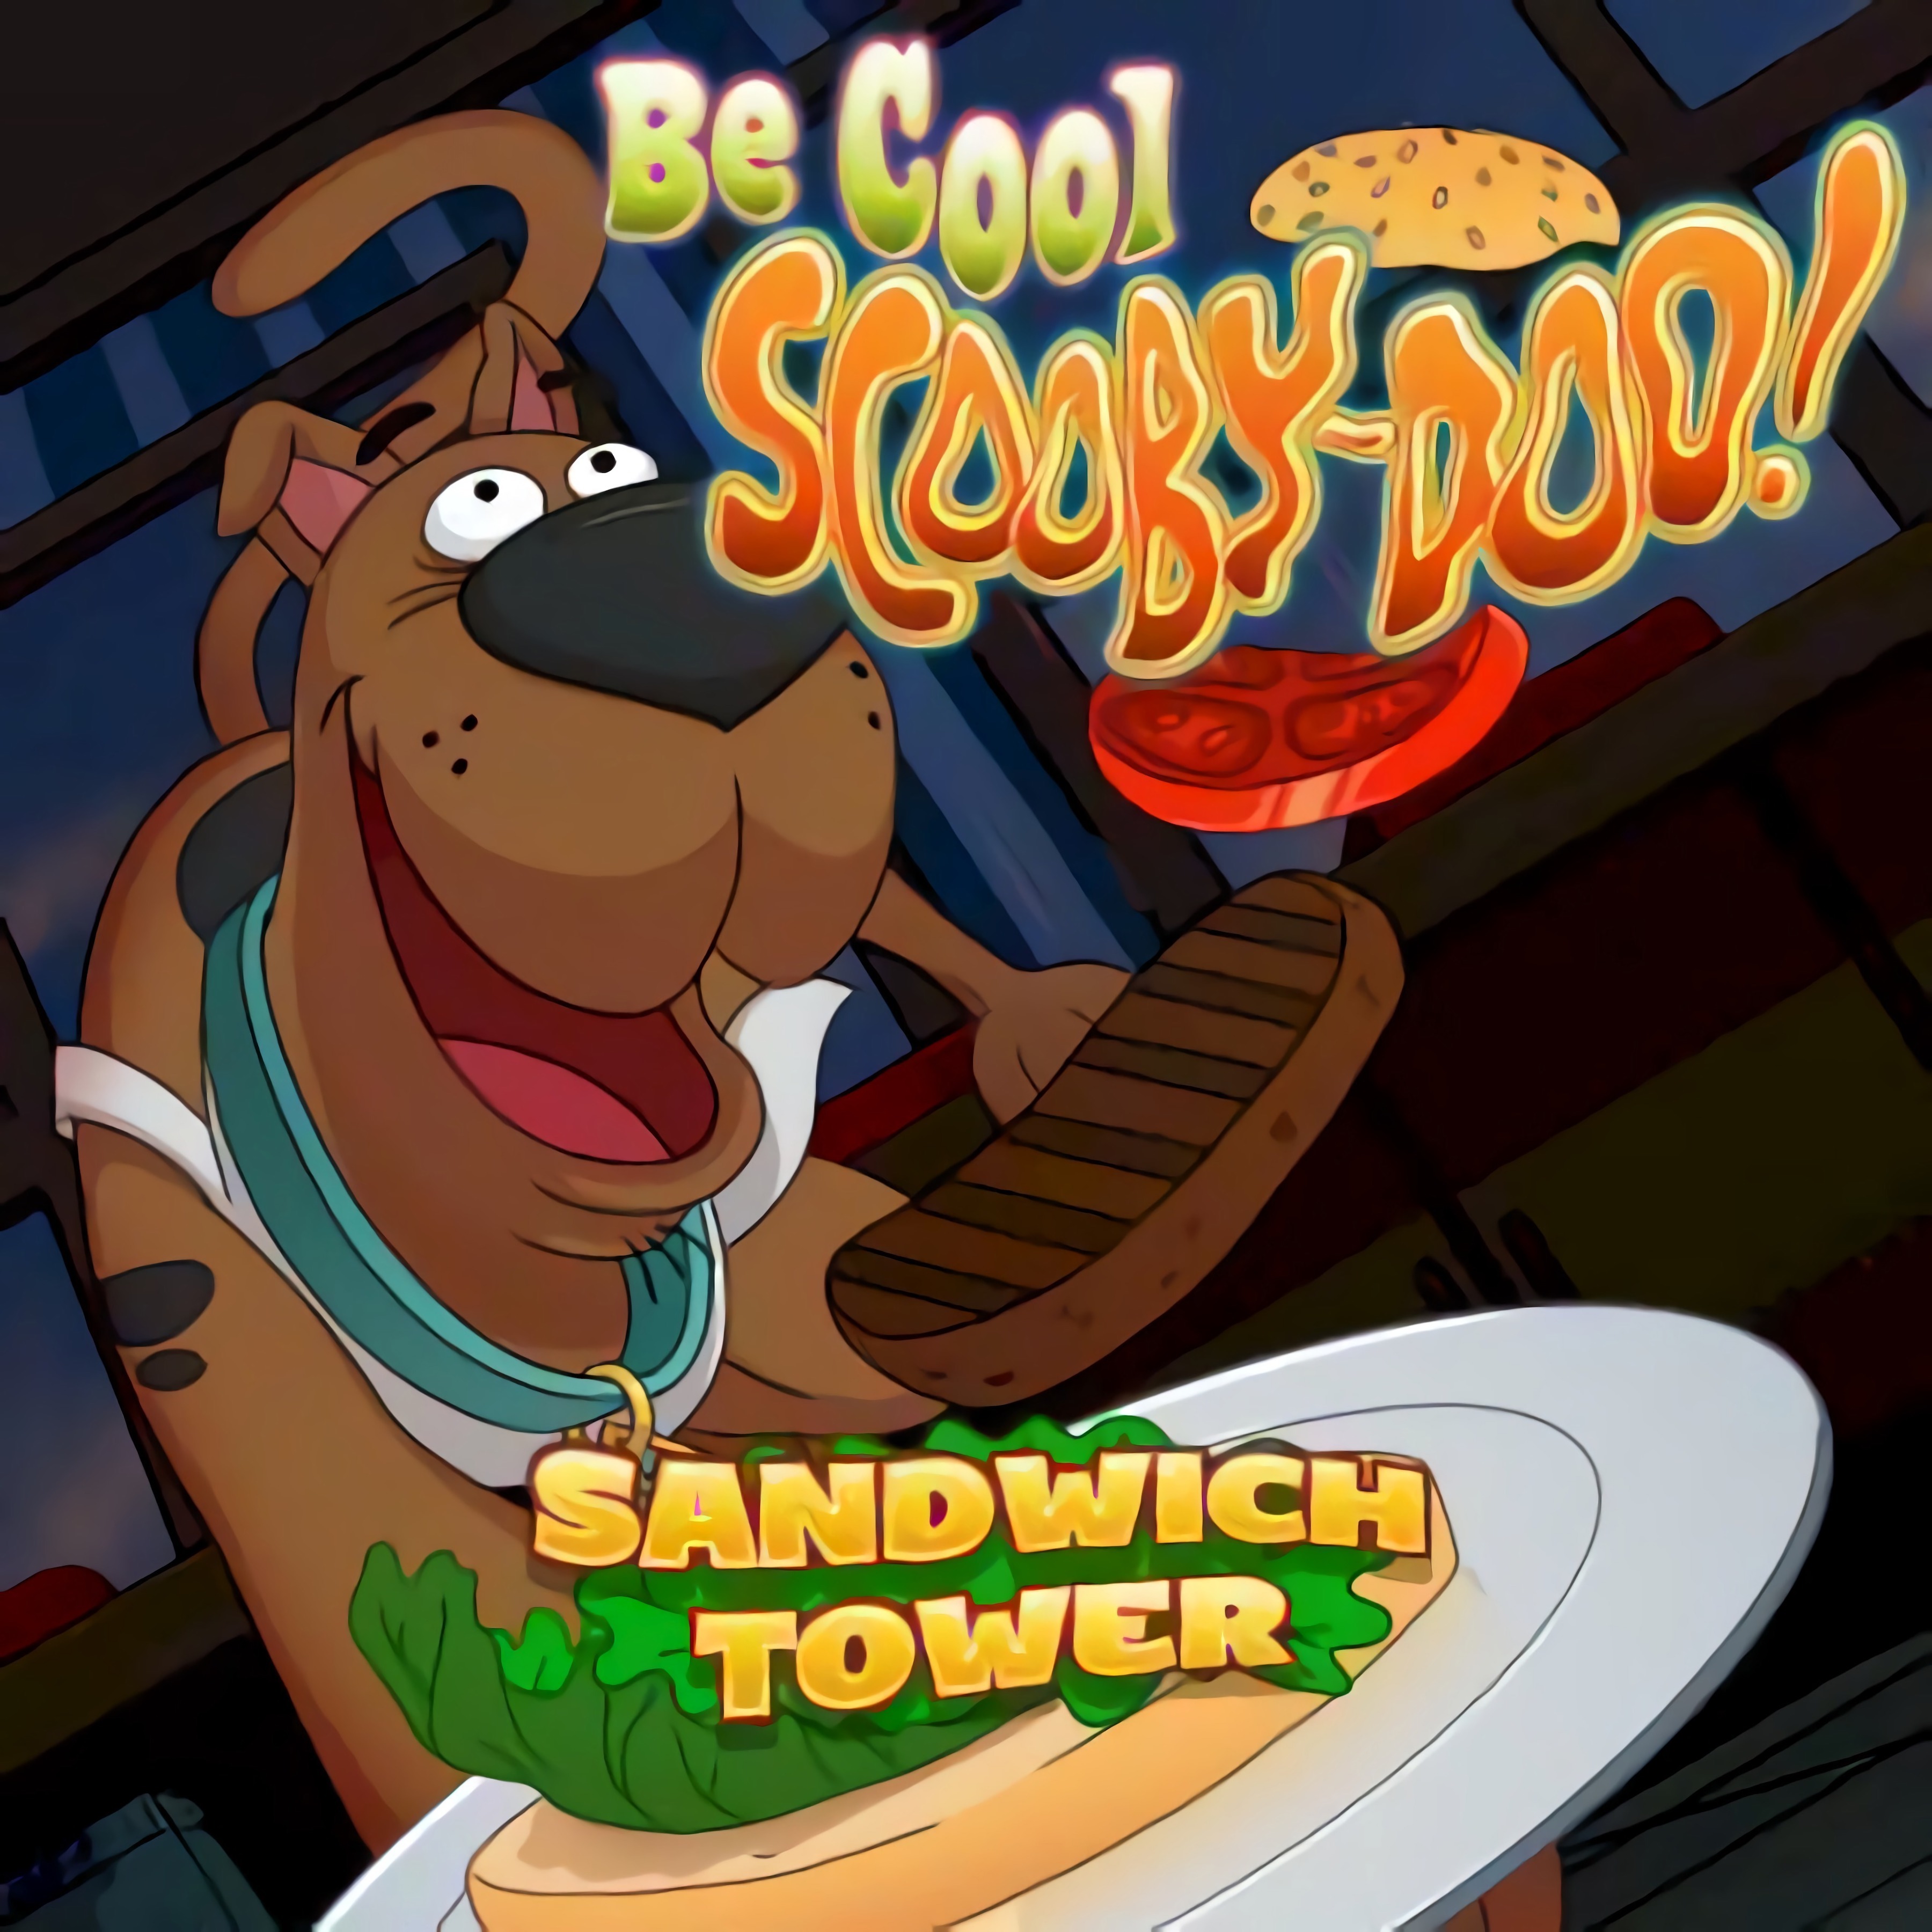 scooby doo sandwich